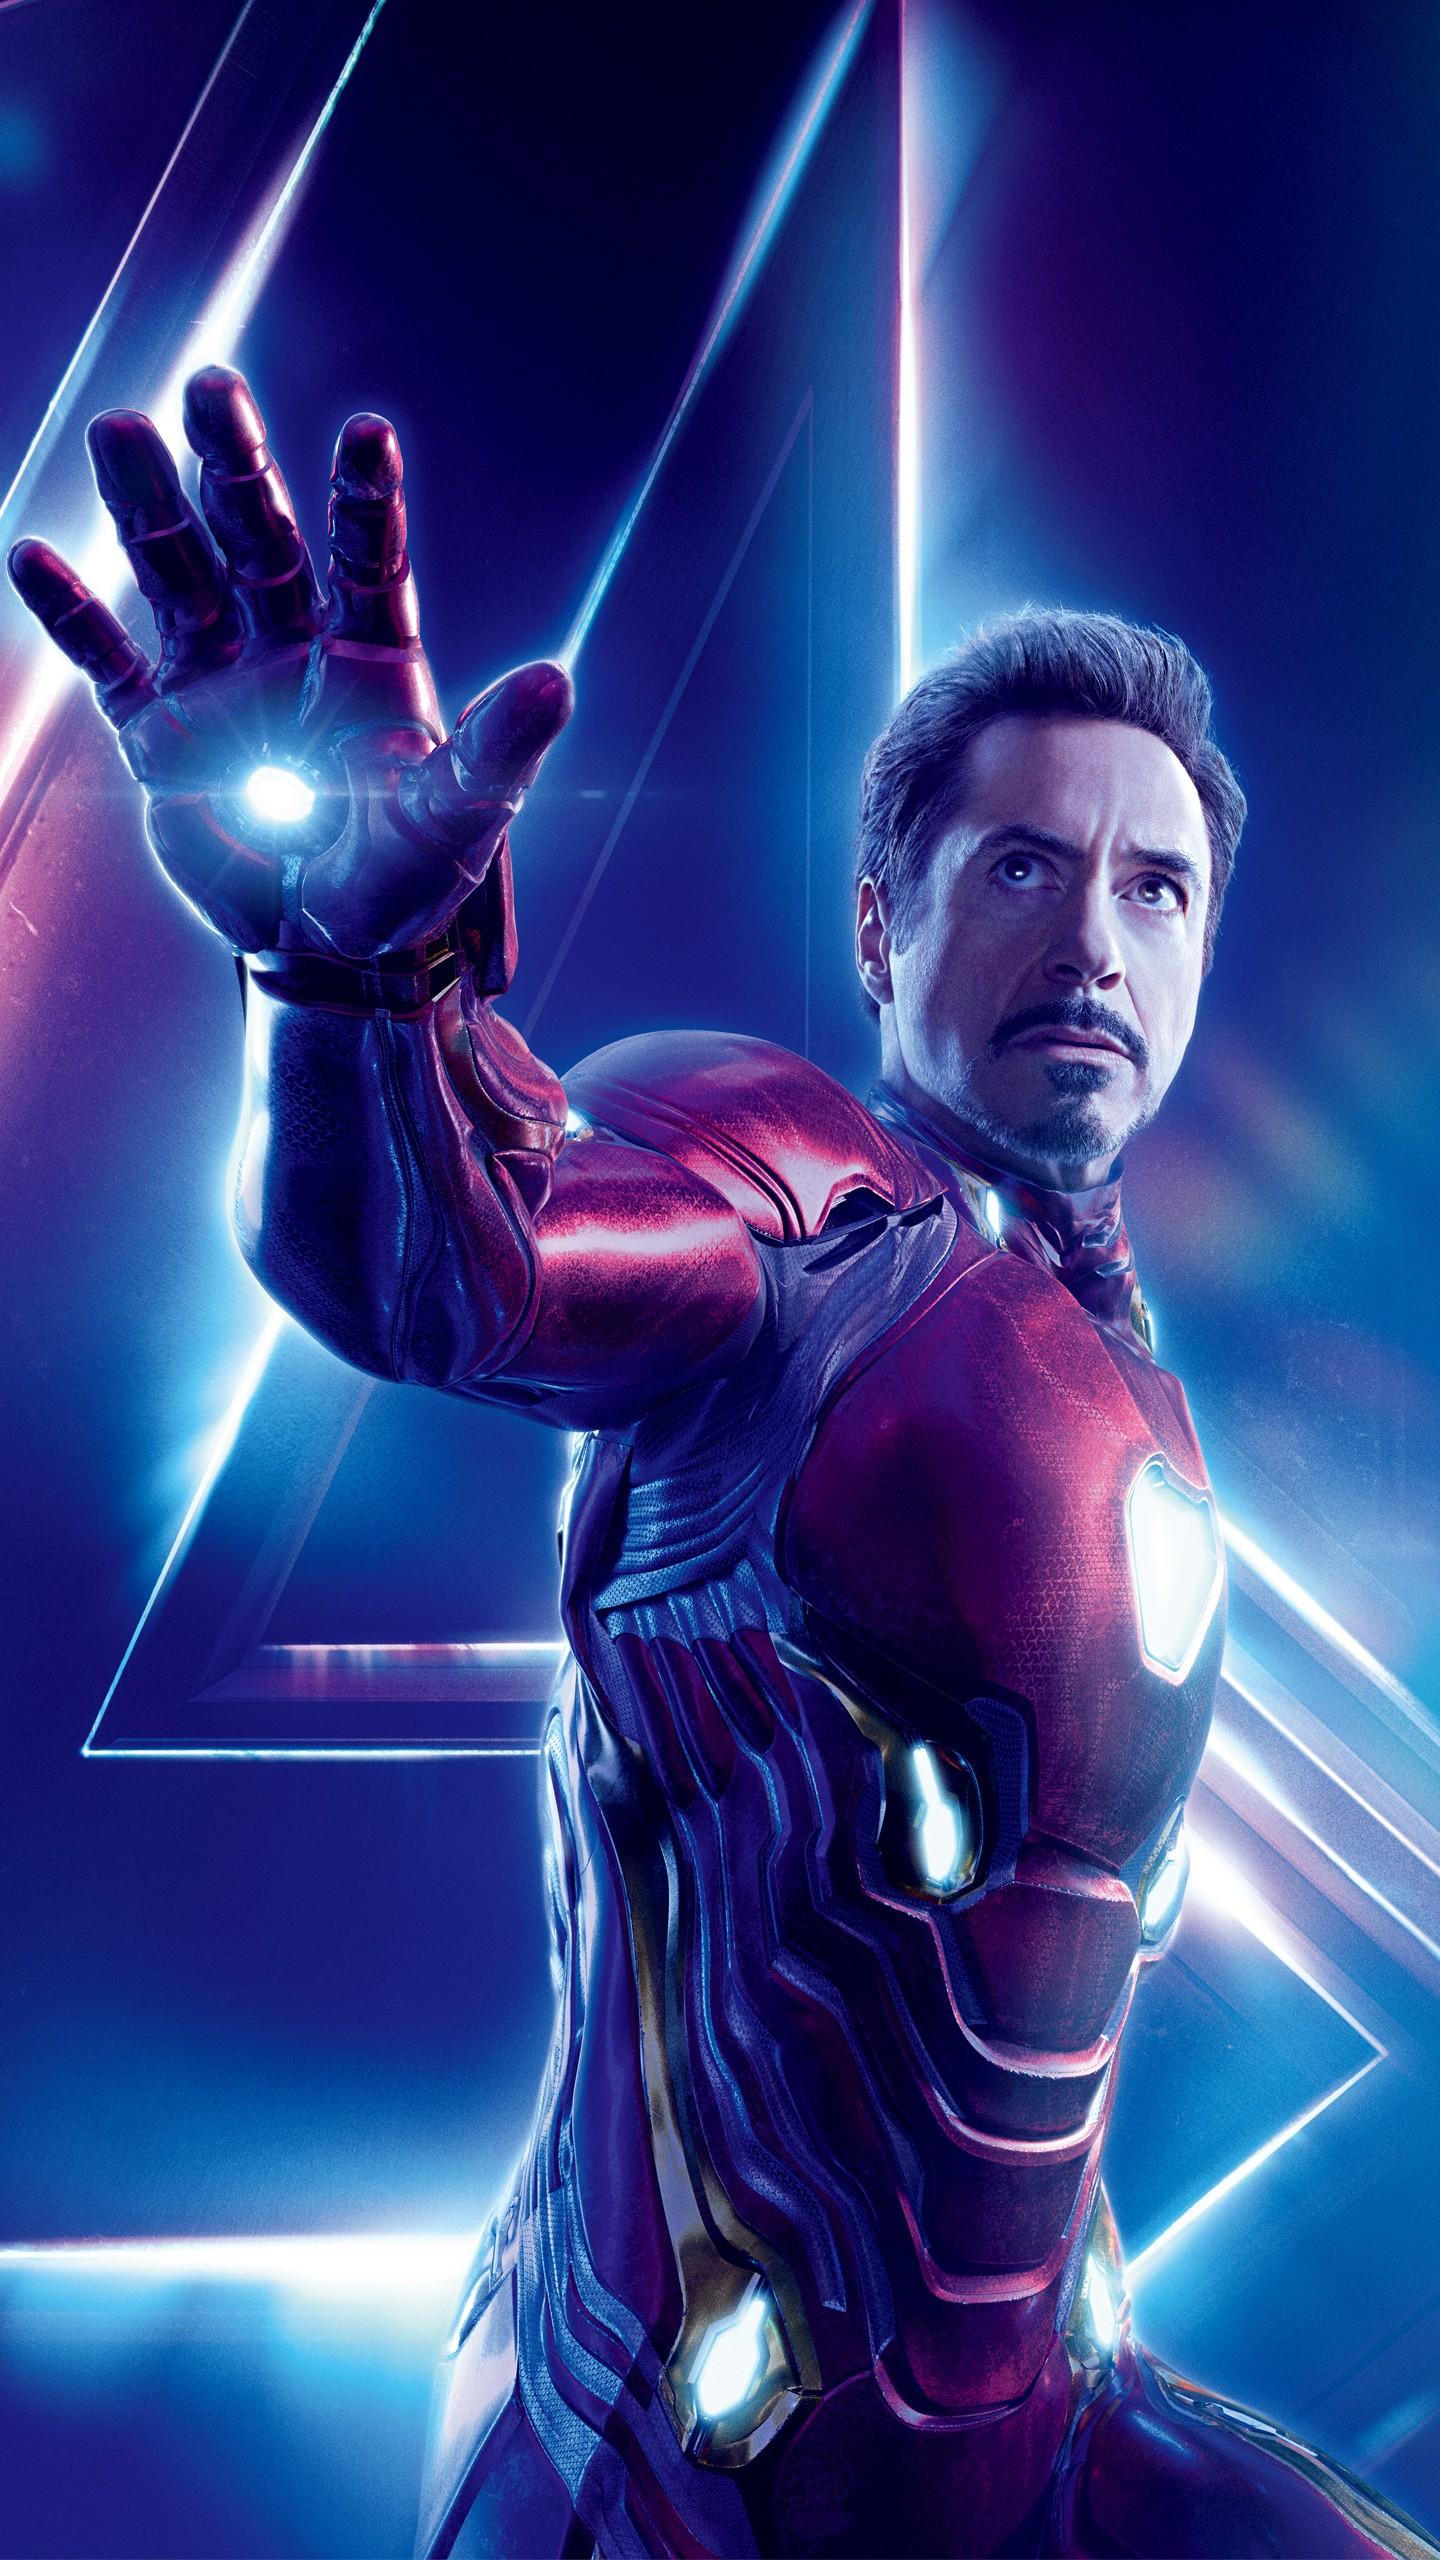 Iron Man in Avengers Infinity War 4K 8K Wallpaper. HD Wallpaper